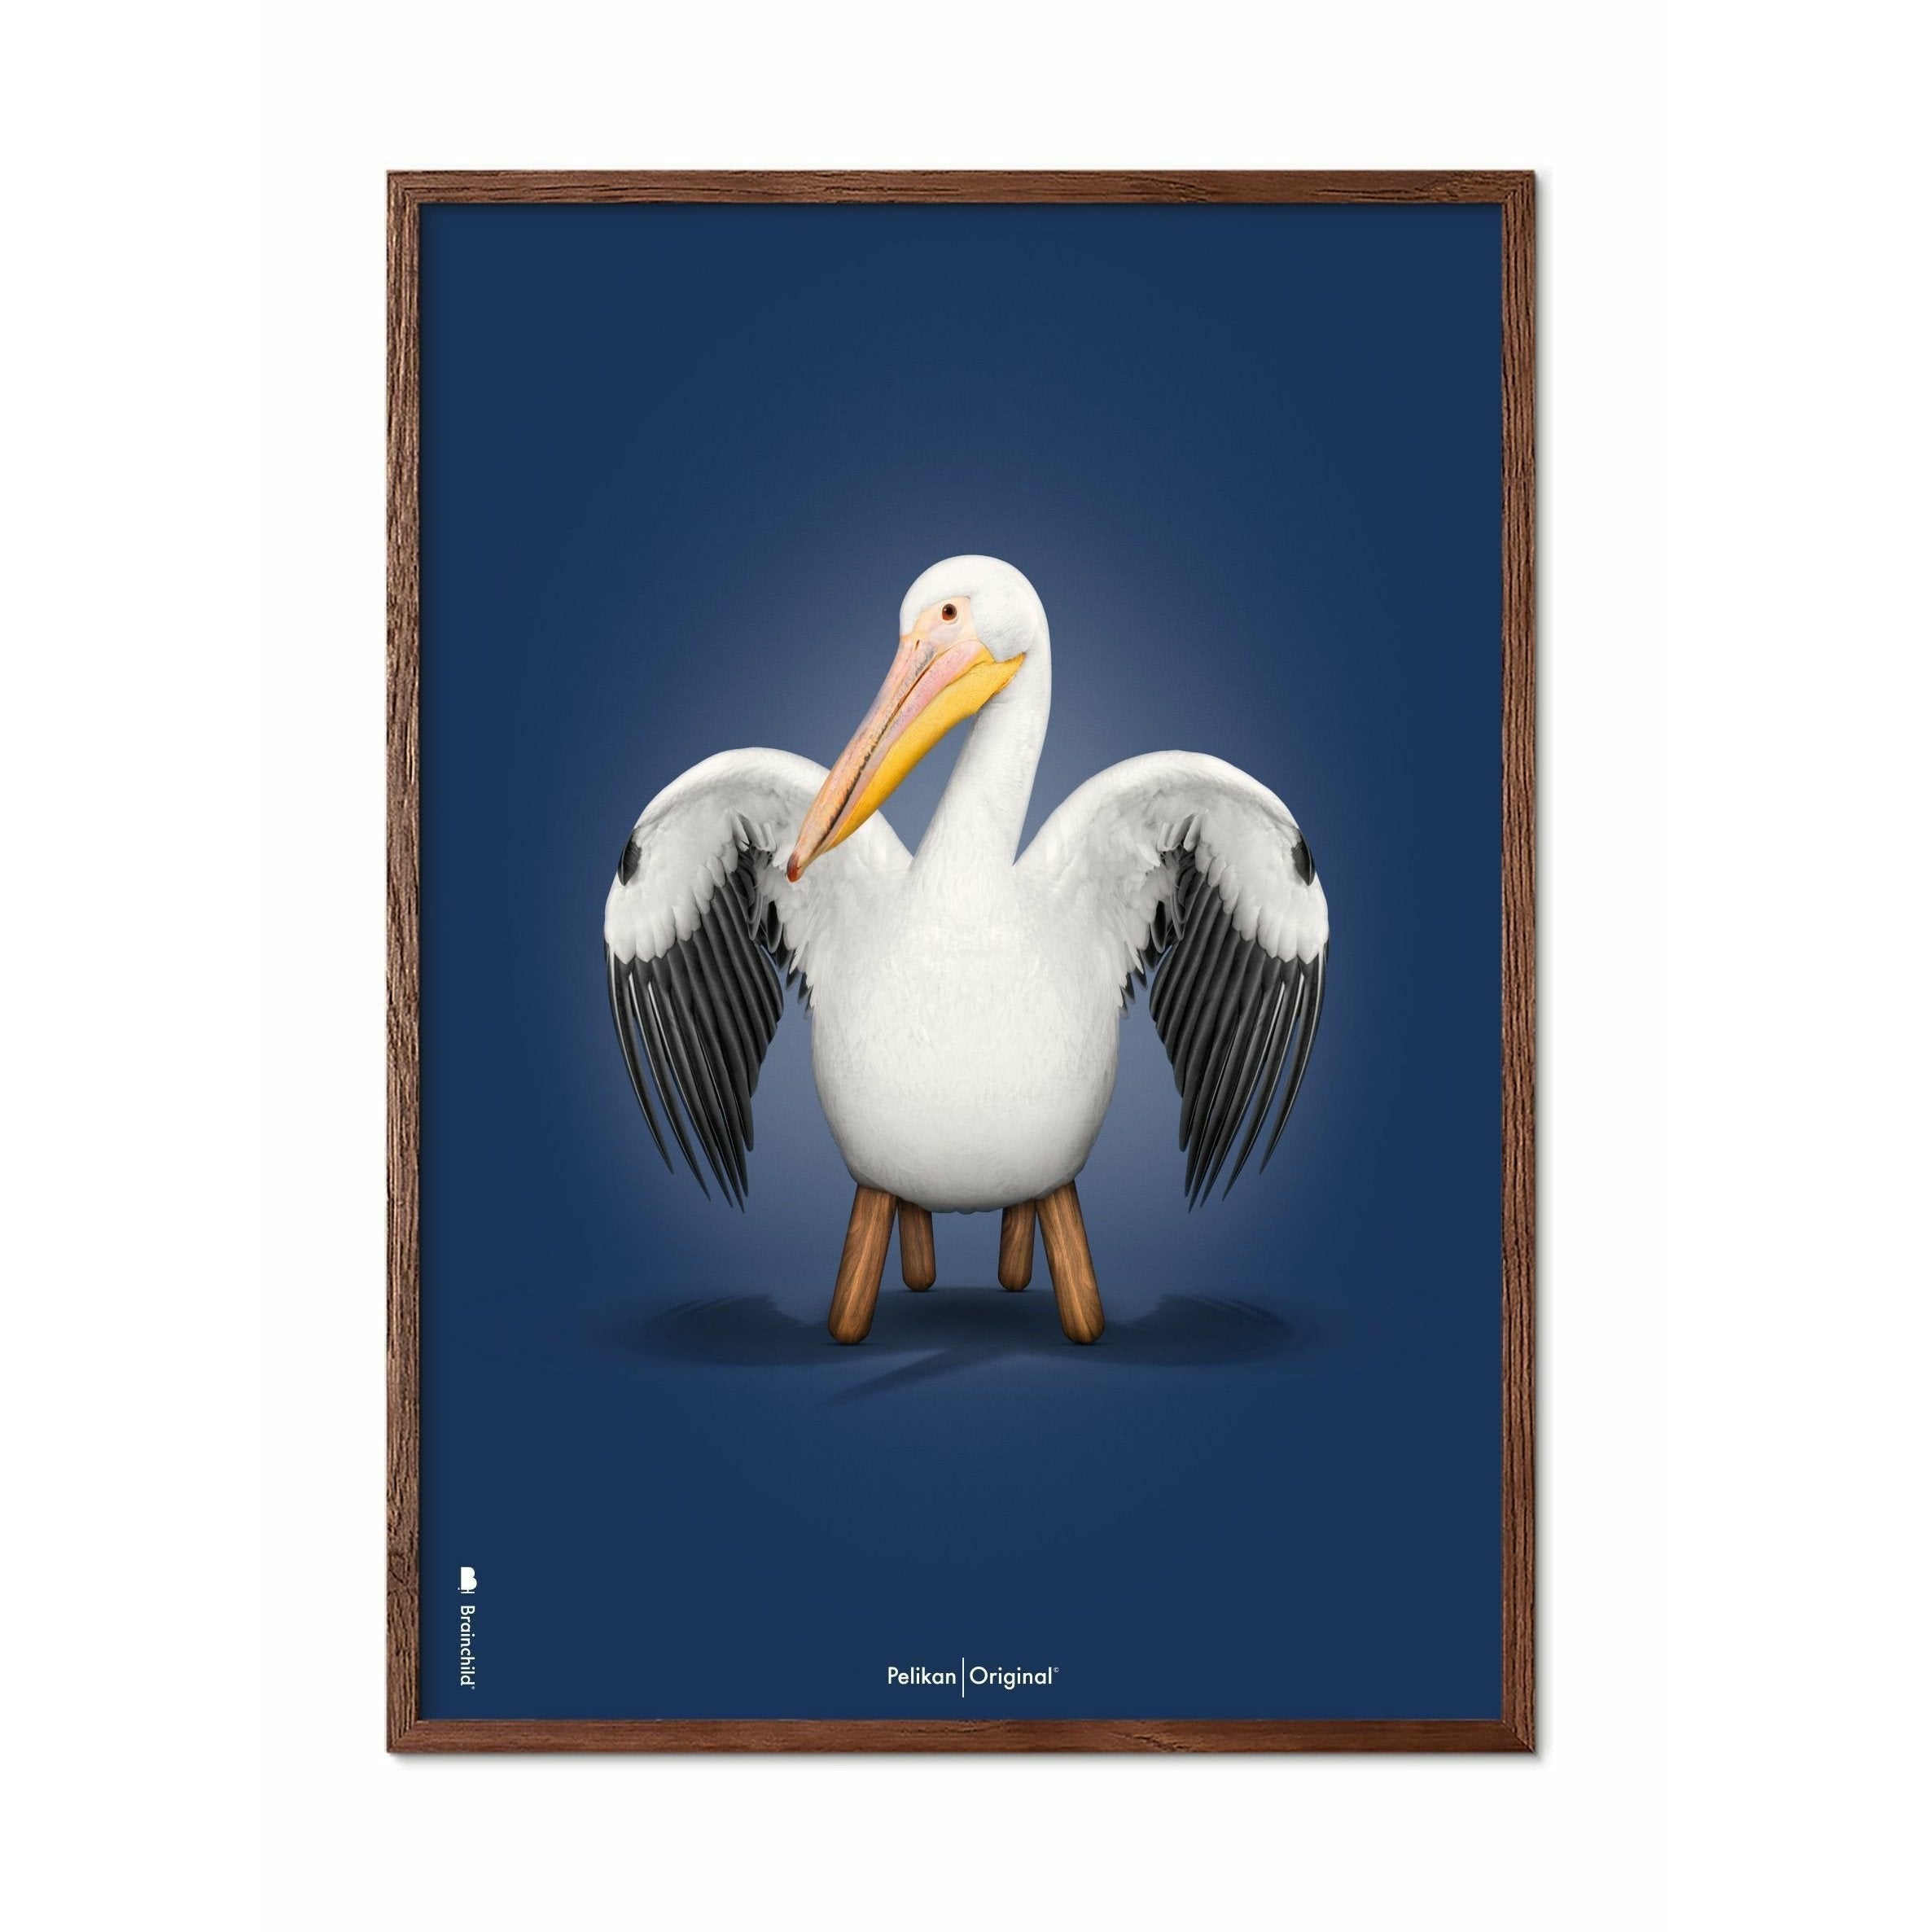 Brainchild Pelikan Classic plakát, tmavý dřevěný rám 70x100 cm, tmavě modré pozadí